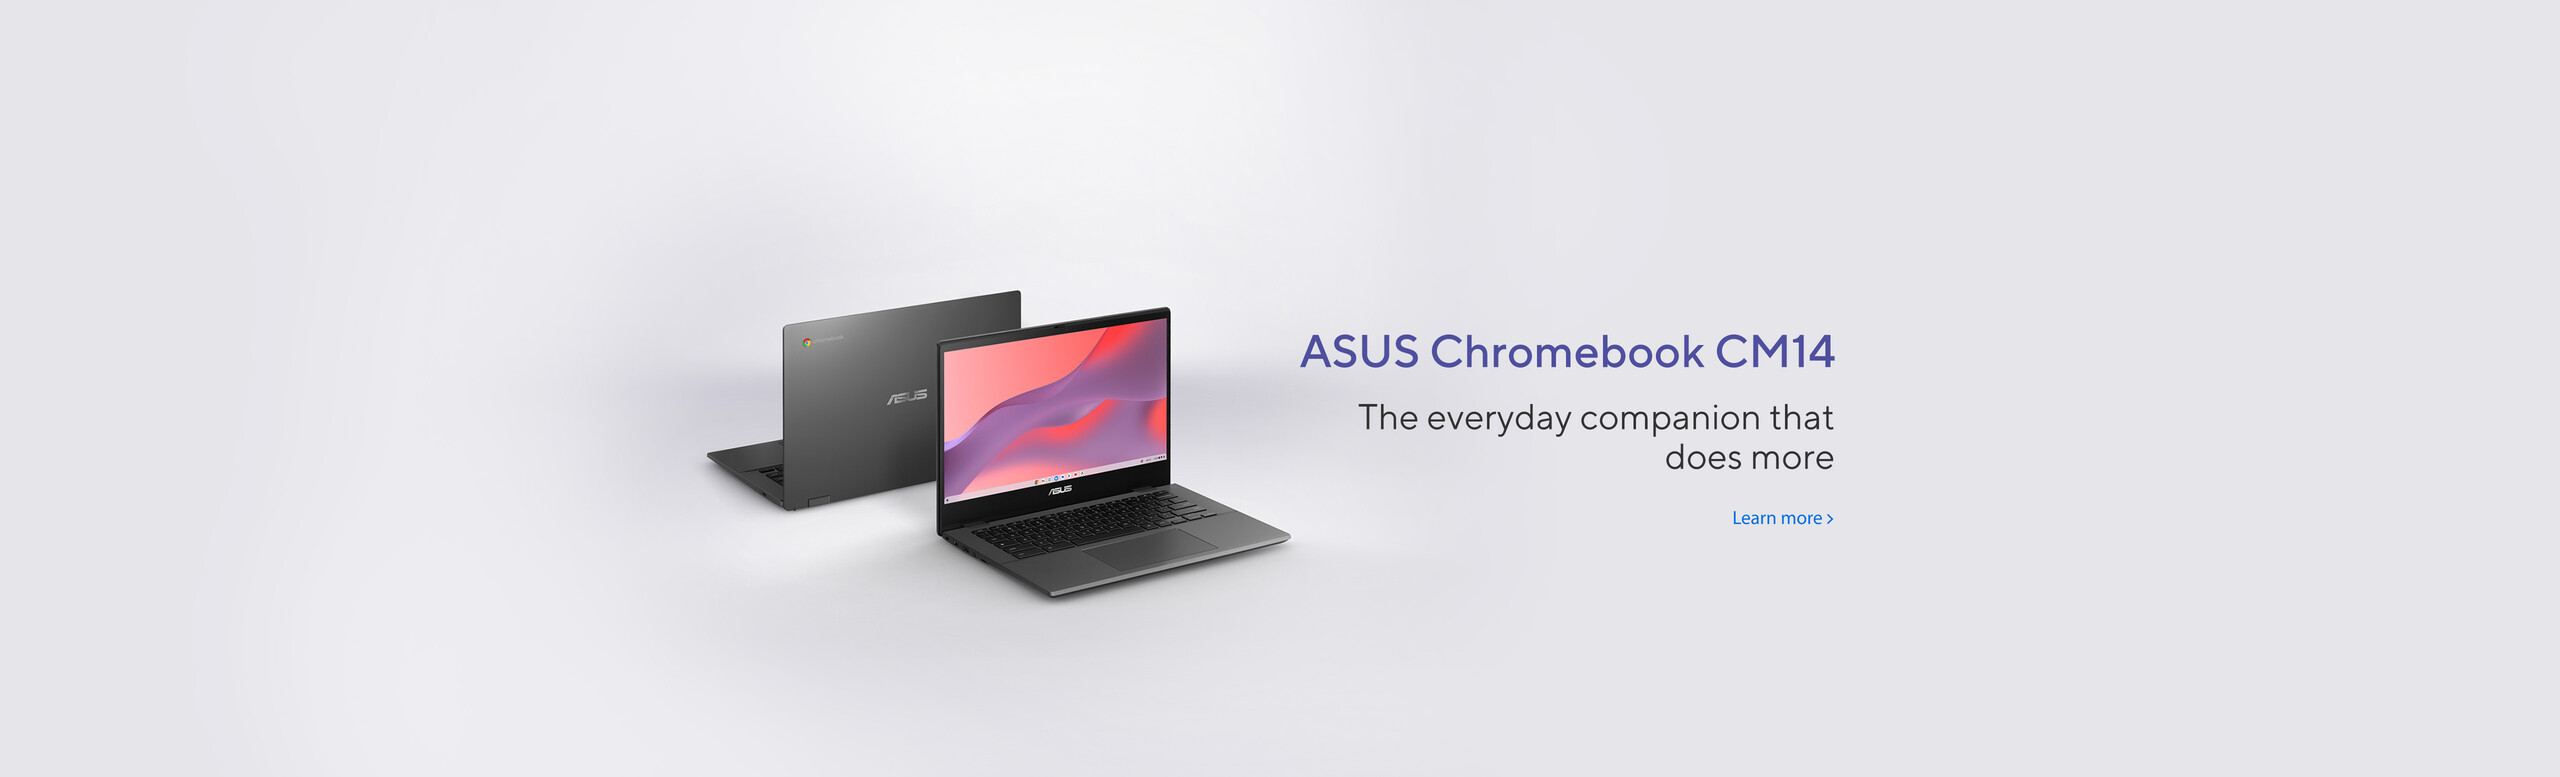 ASUS Chromebook CM14